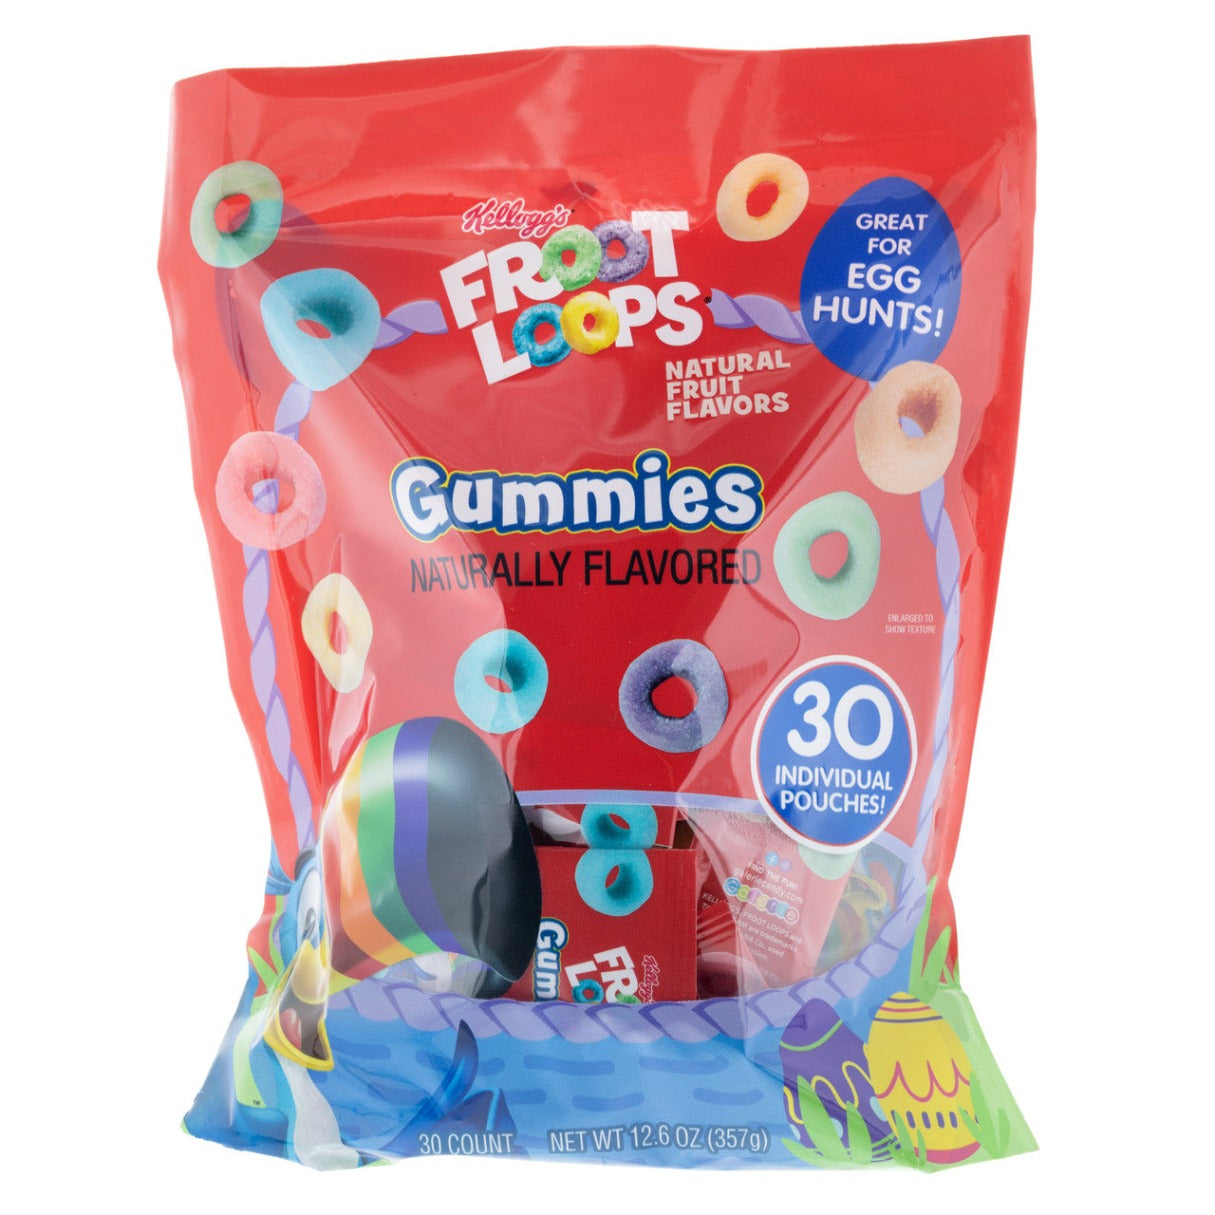 Froot Loops Gummies Easter Basket Fillers 12.6oz - 6ct